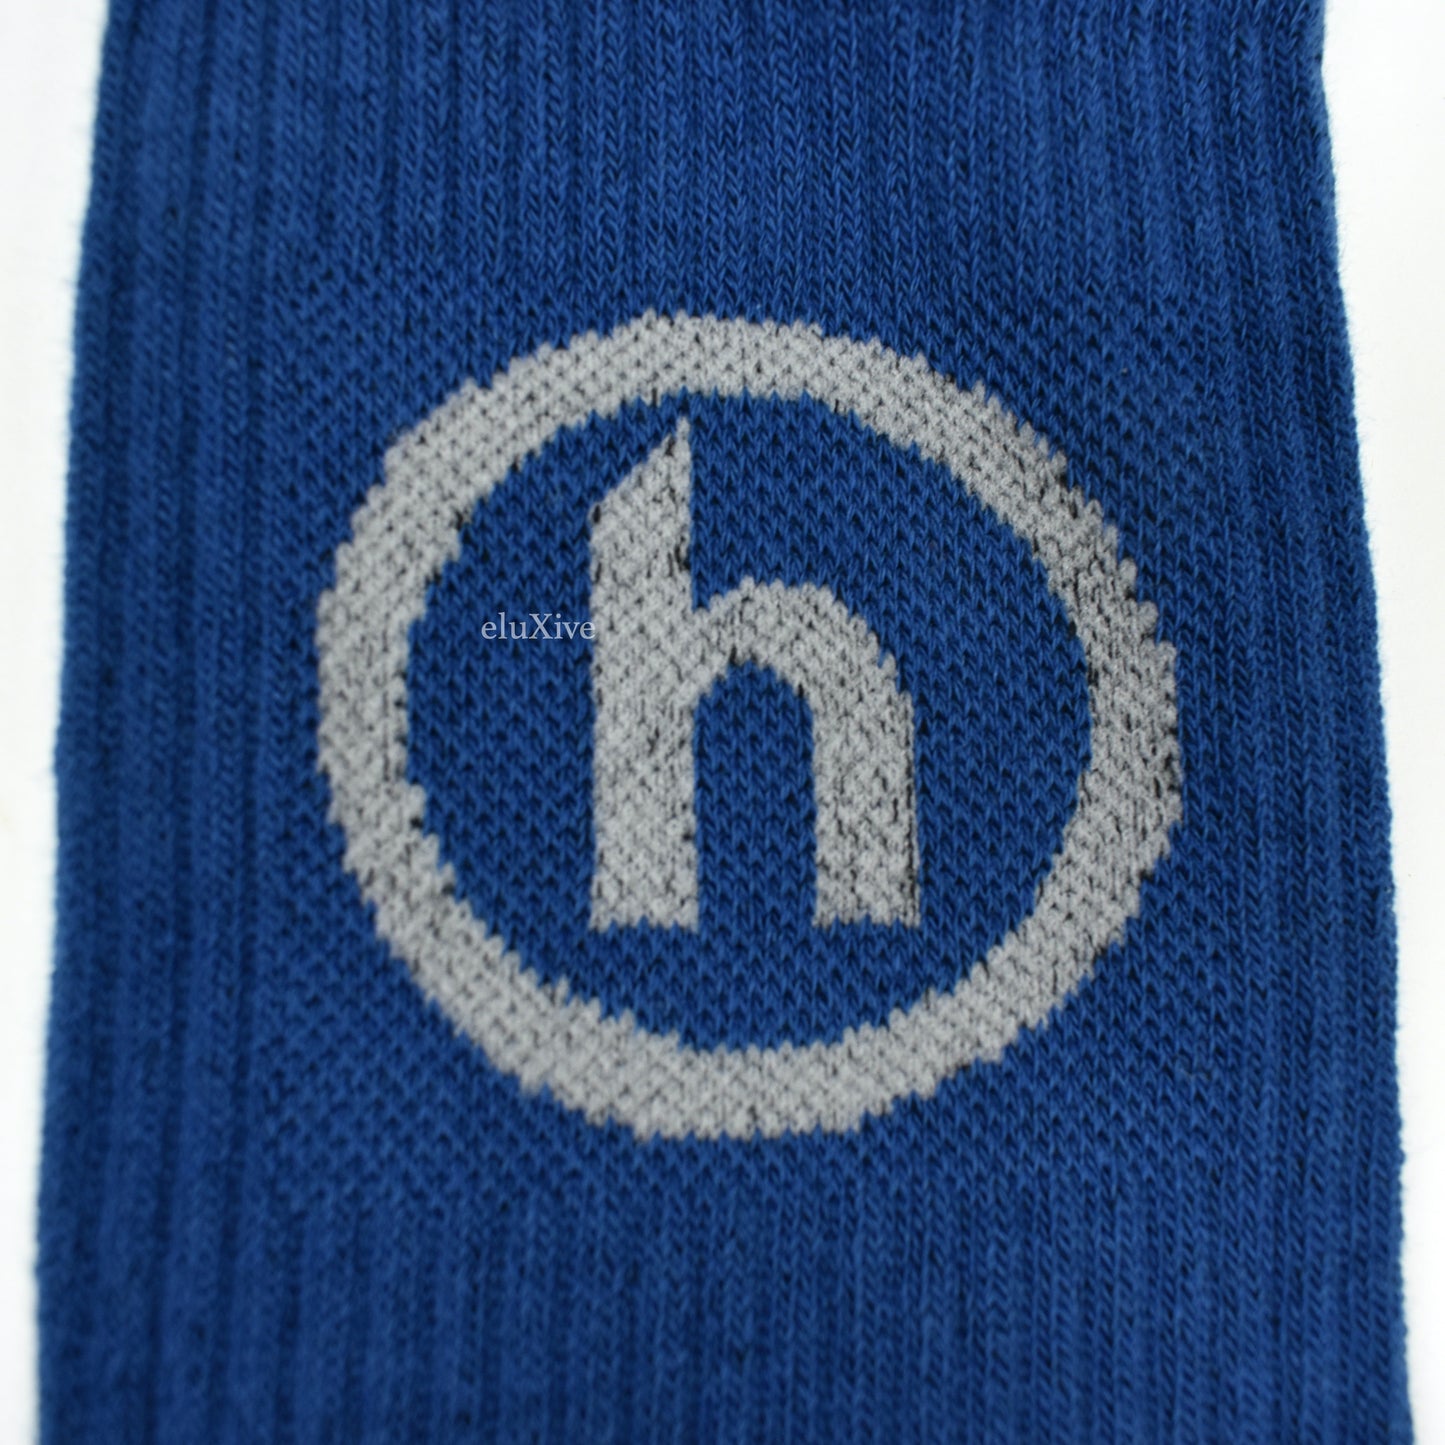 Hidden NY - Blue/Gray H Logo Knit Socks